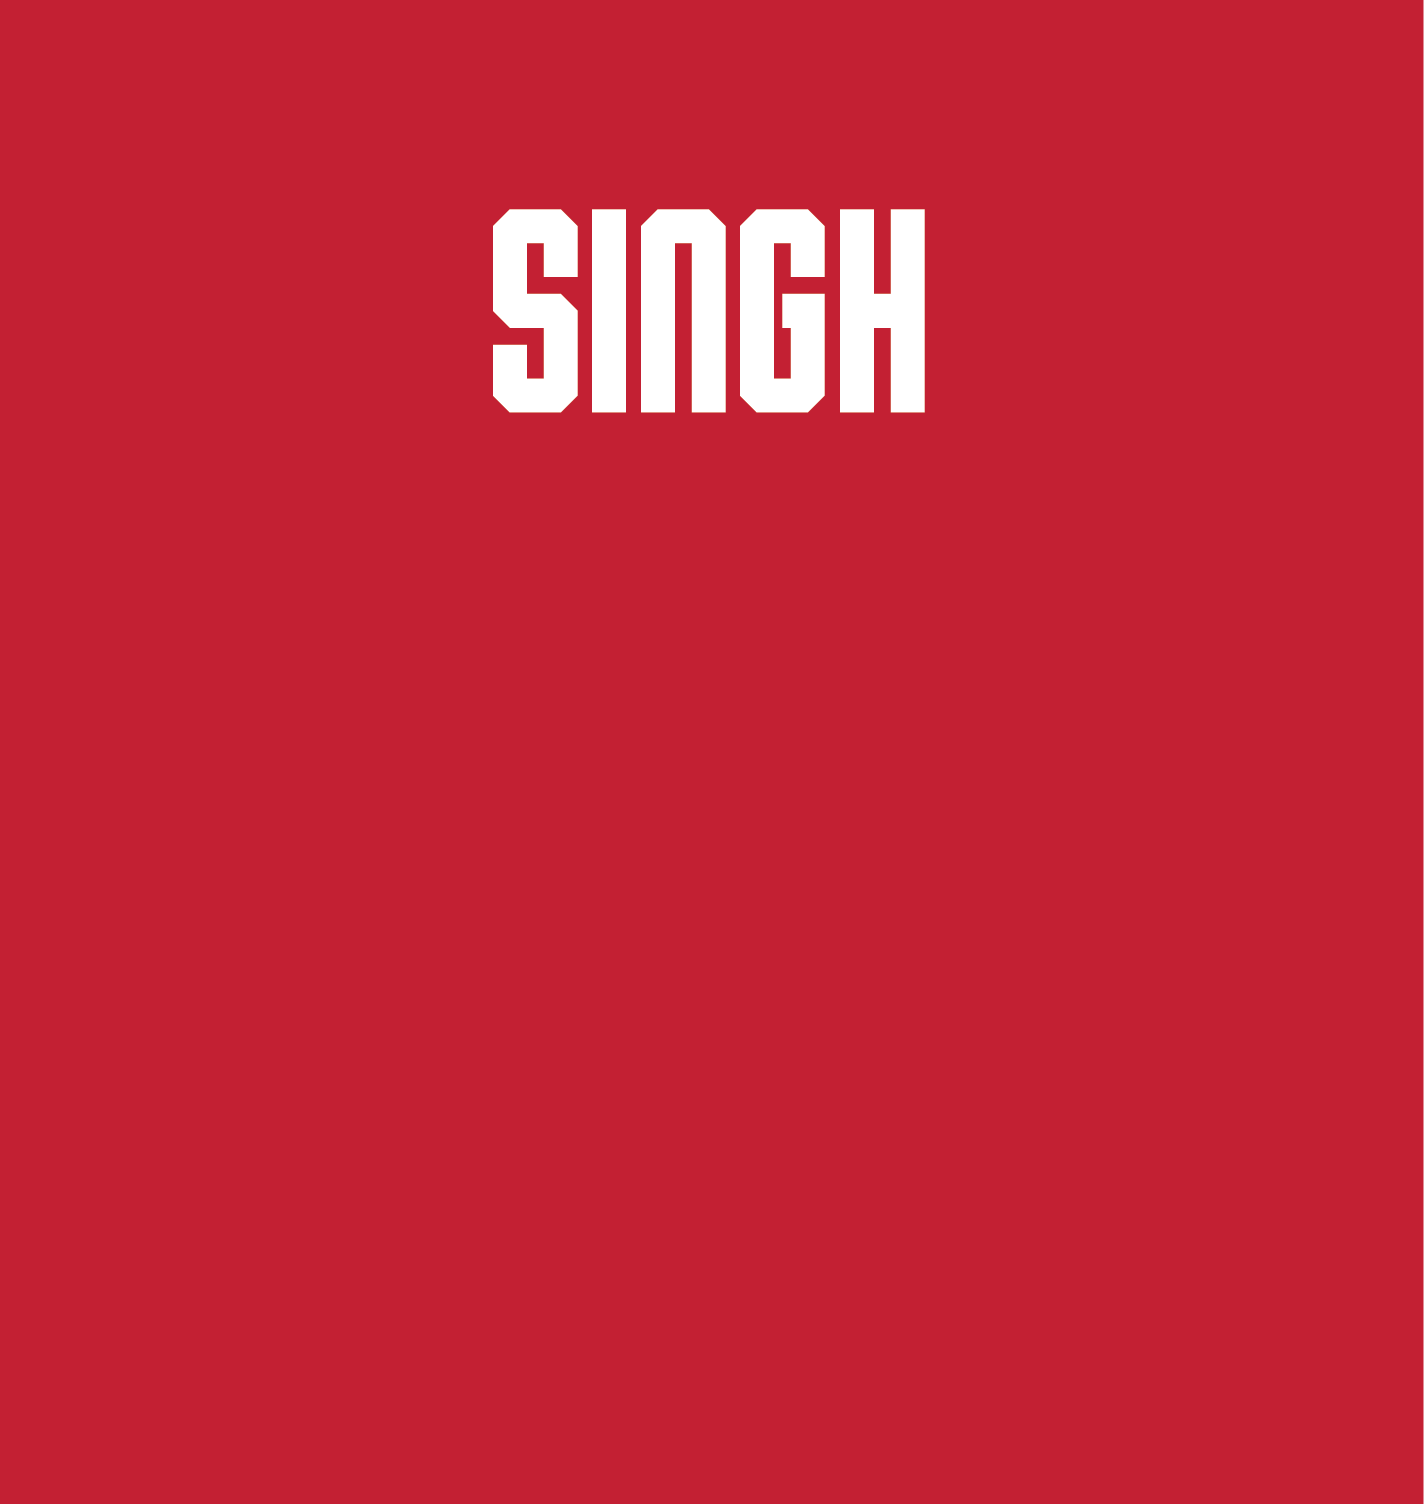 Shohaan Singh